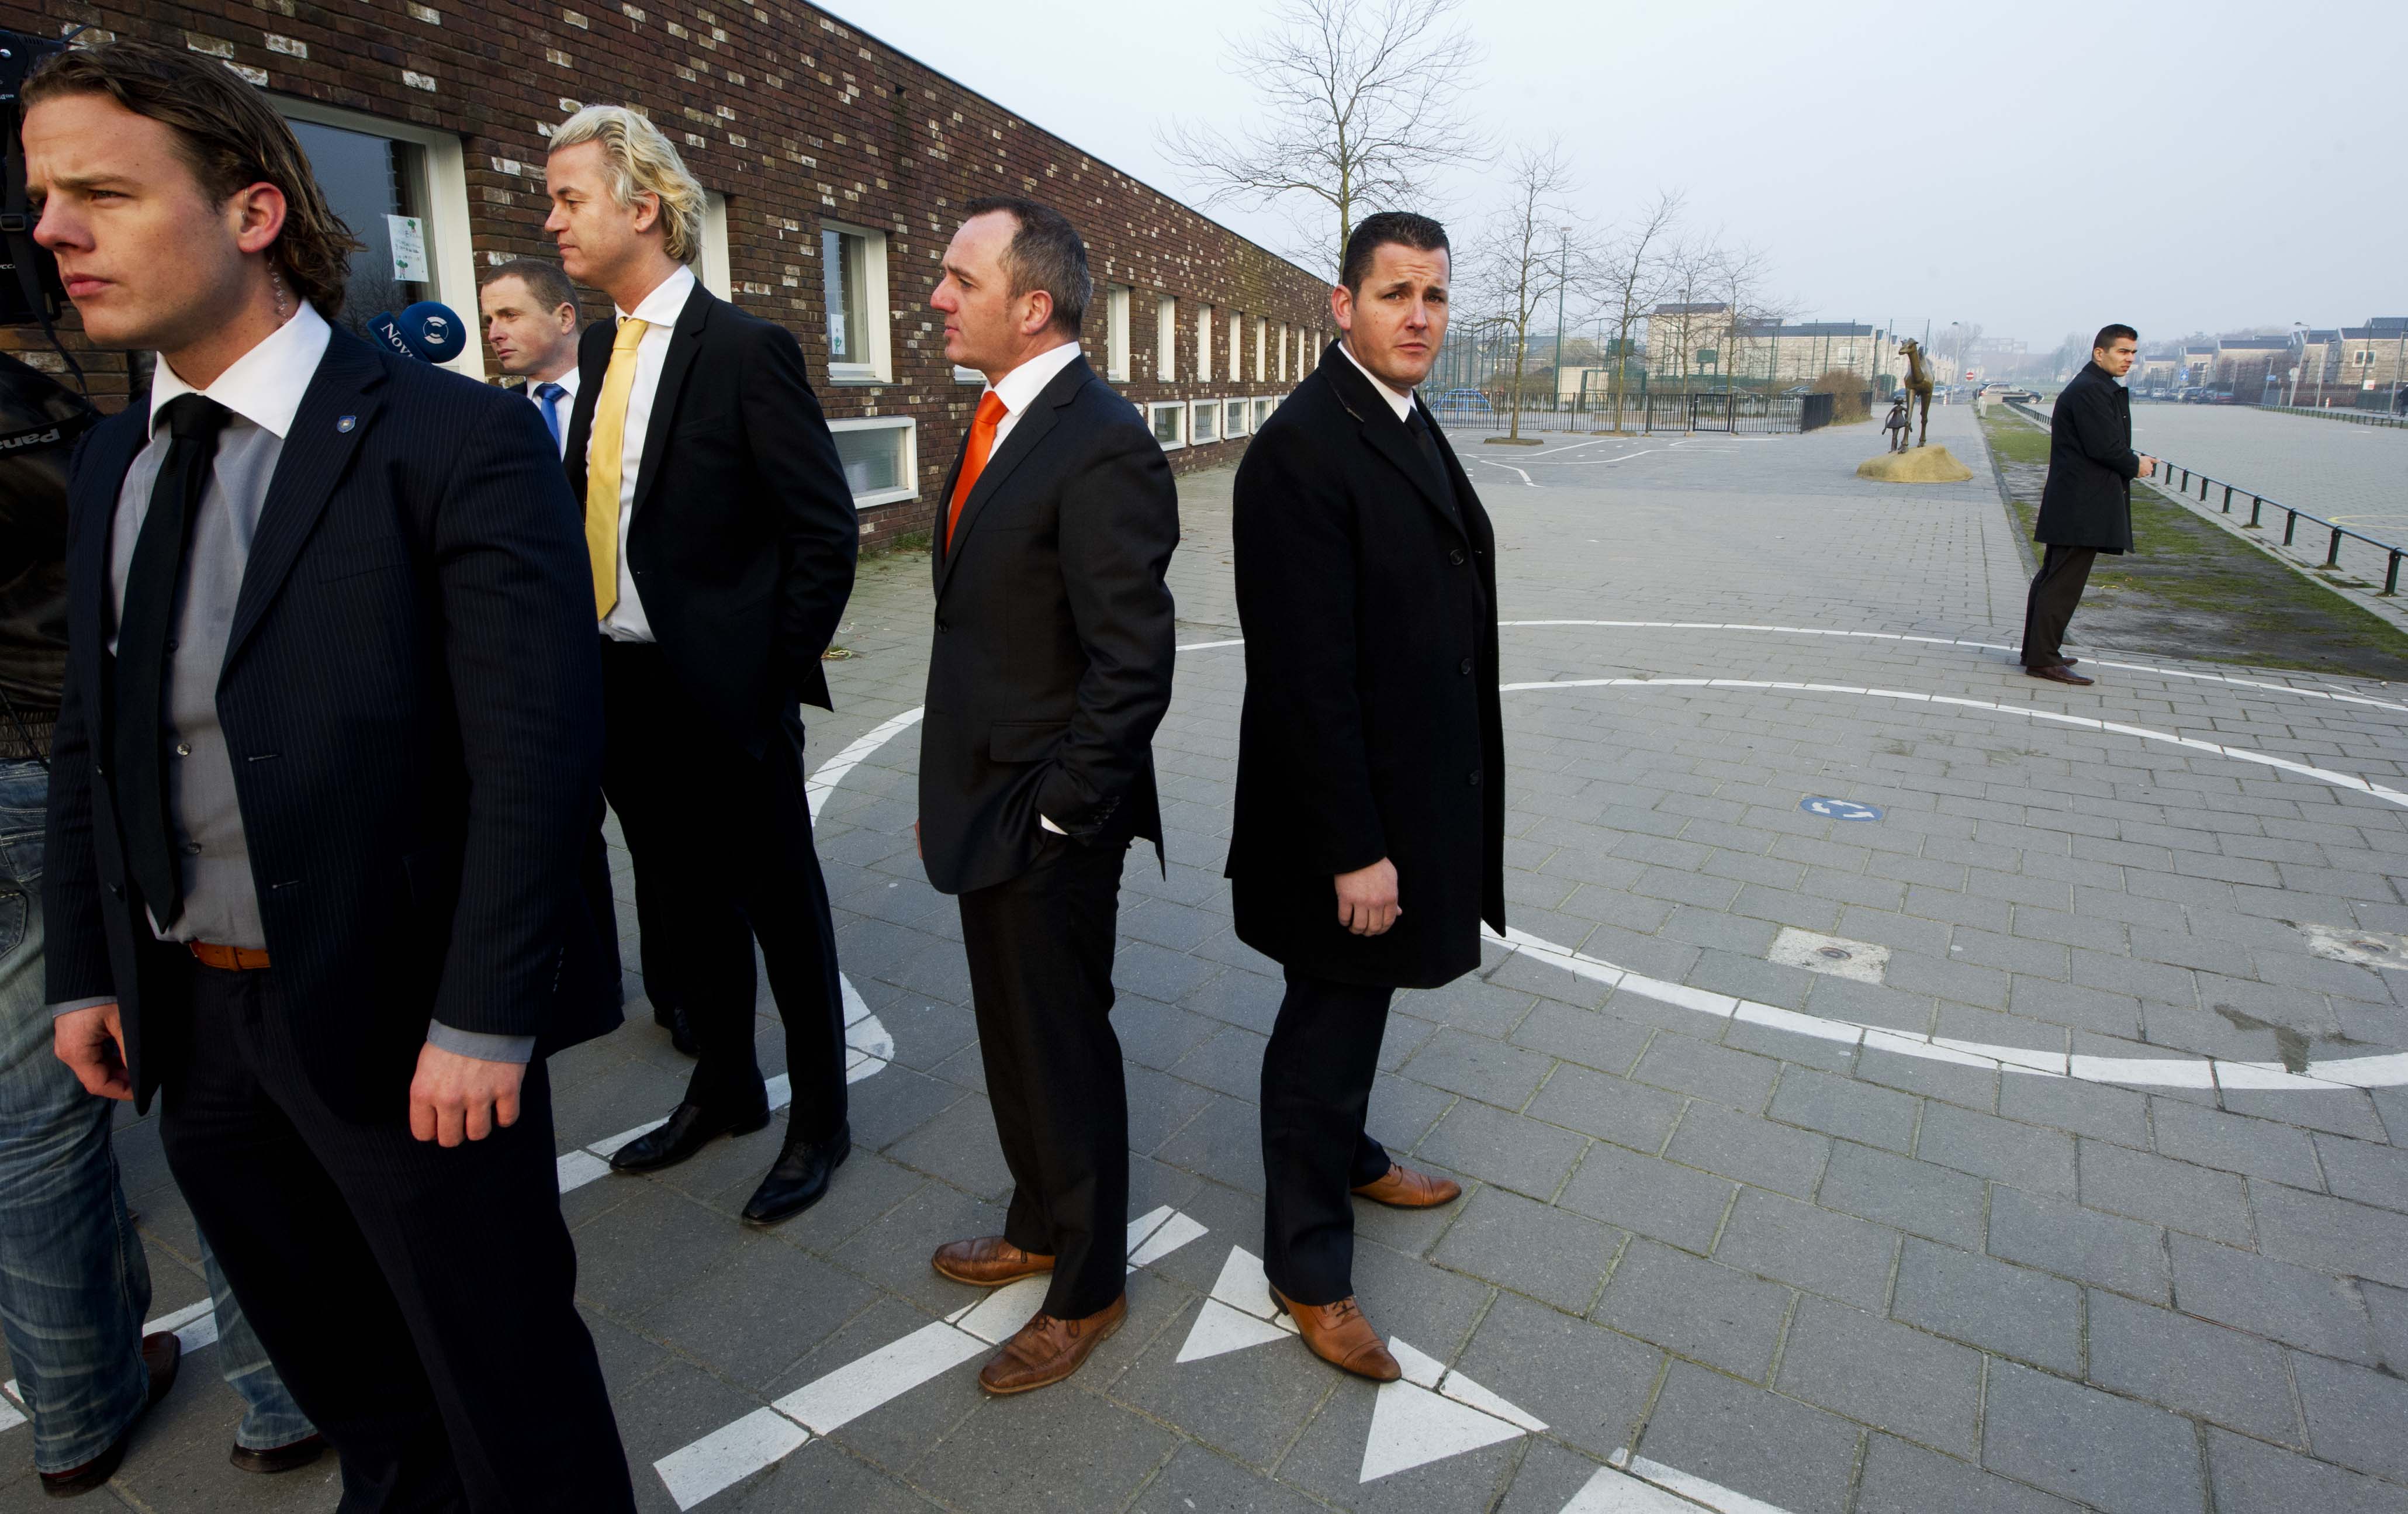 2011-03-02 09:35:35 DEN HAAG - PVV-leider Geert Wilders en Machiel de Graaf, lijsttrekker van de PVV voor de Eerste Kamer, arriveren woensdagochtend bij basisschool De Waterland in Den Haag waar zij hun stem gaan uitbrengen voor de Provinciale Statenverkiezingen. Het is de eerste keer dat de Partij voor de Vrijheid meedoet aan de Provinciale Statenverkiezingen. ANP ROBIN UTRECHT